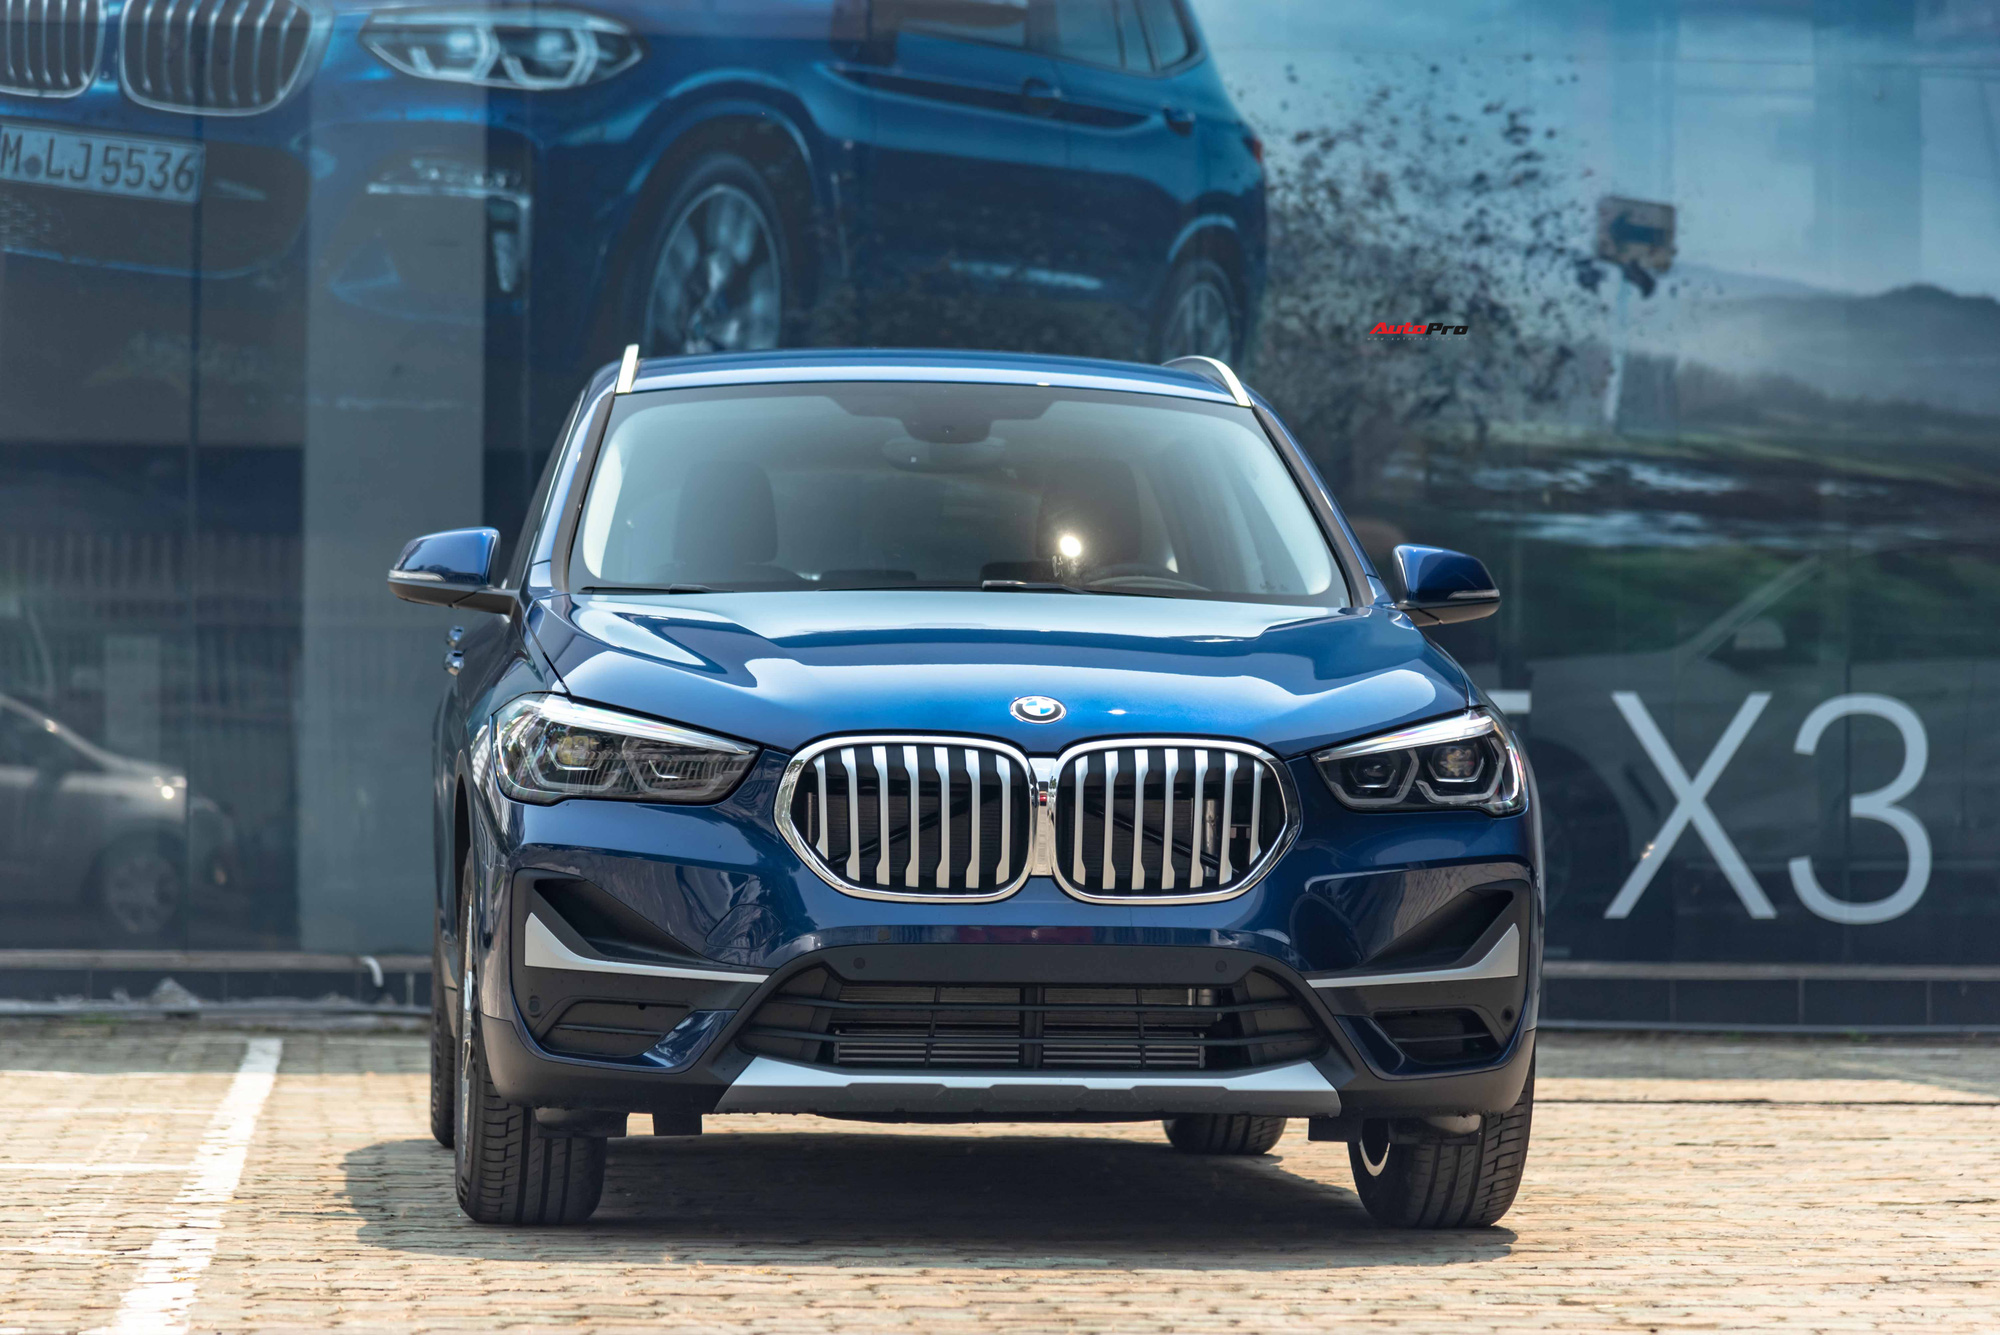 Chi tiết BMW X1 2020 giá 1,859 tỷ đồng tại Việt Nam - đe doạ Mercedes-Benz GLA và Audi Q3 - Ảnh 3.